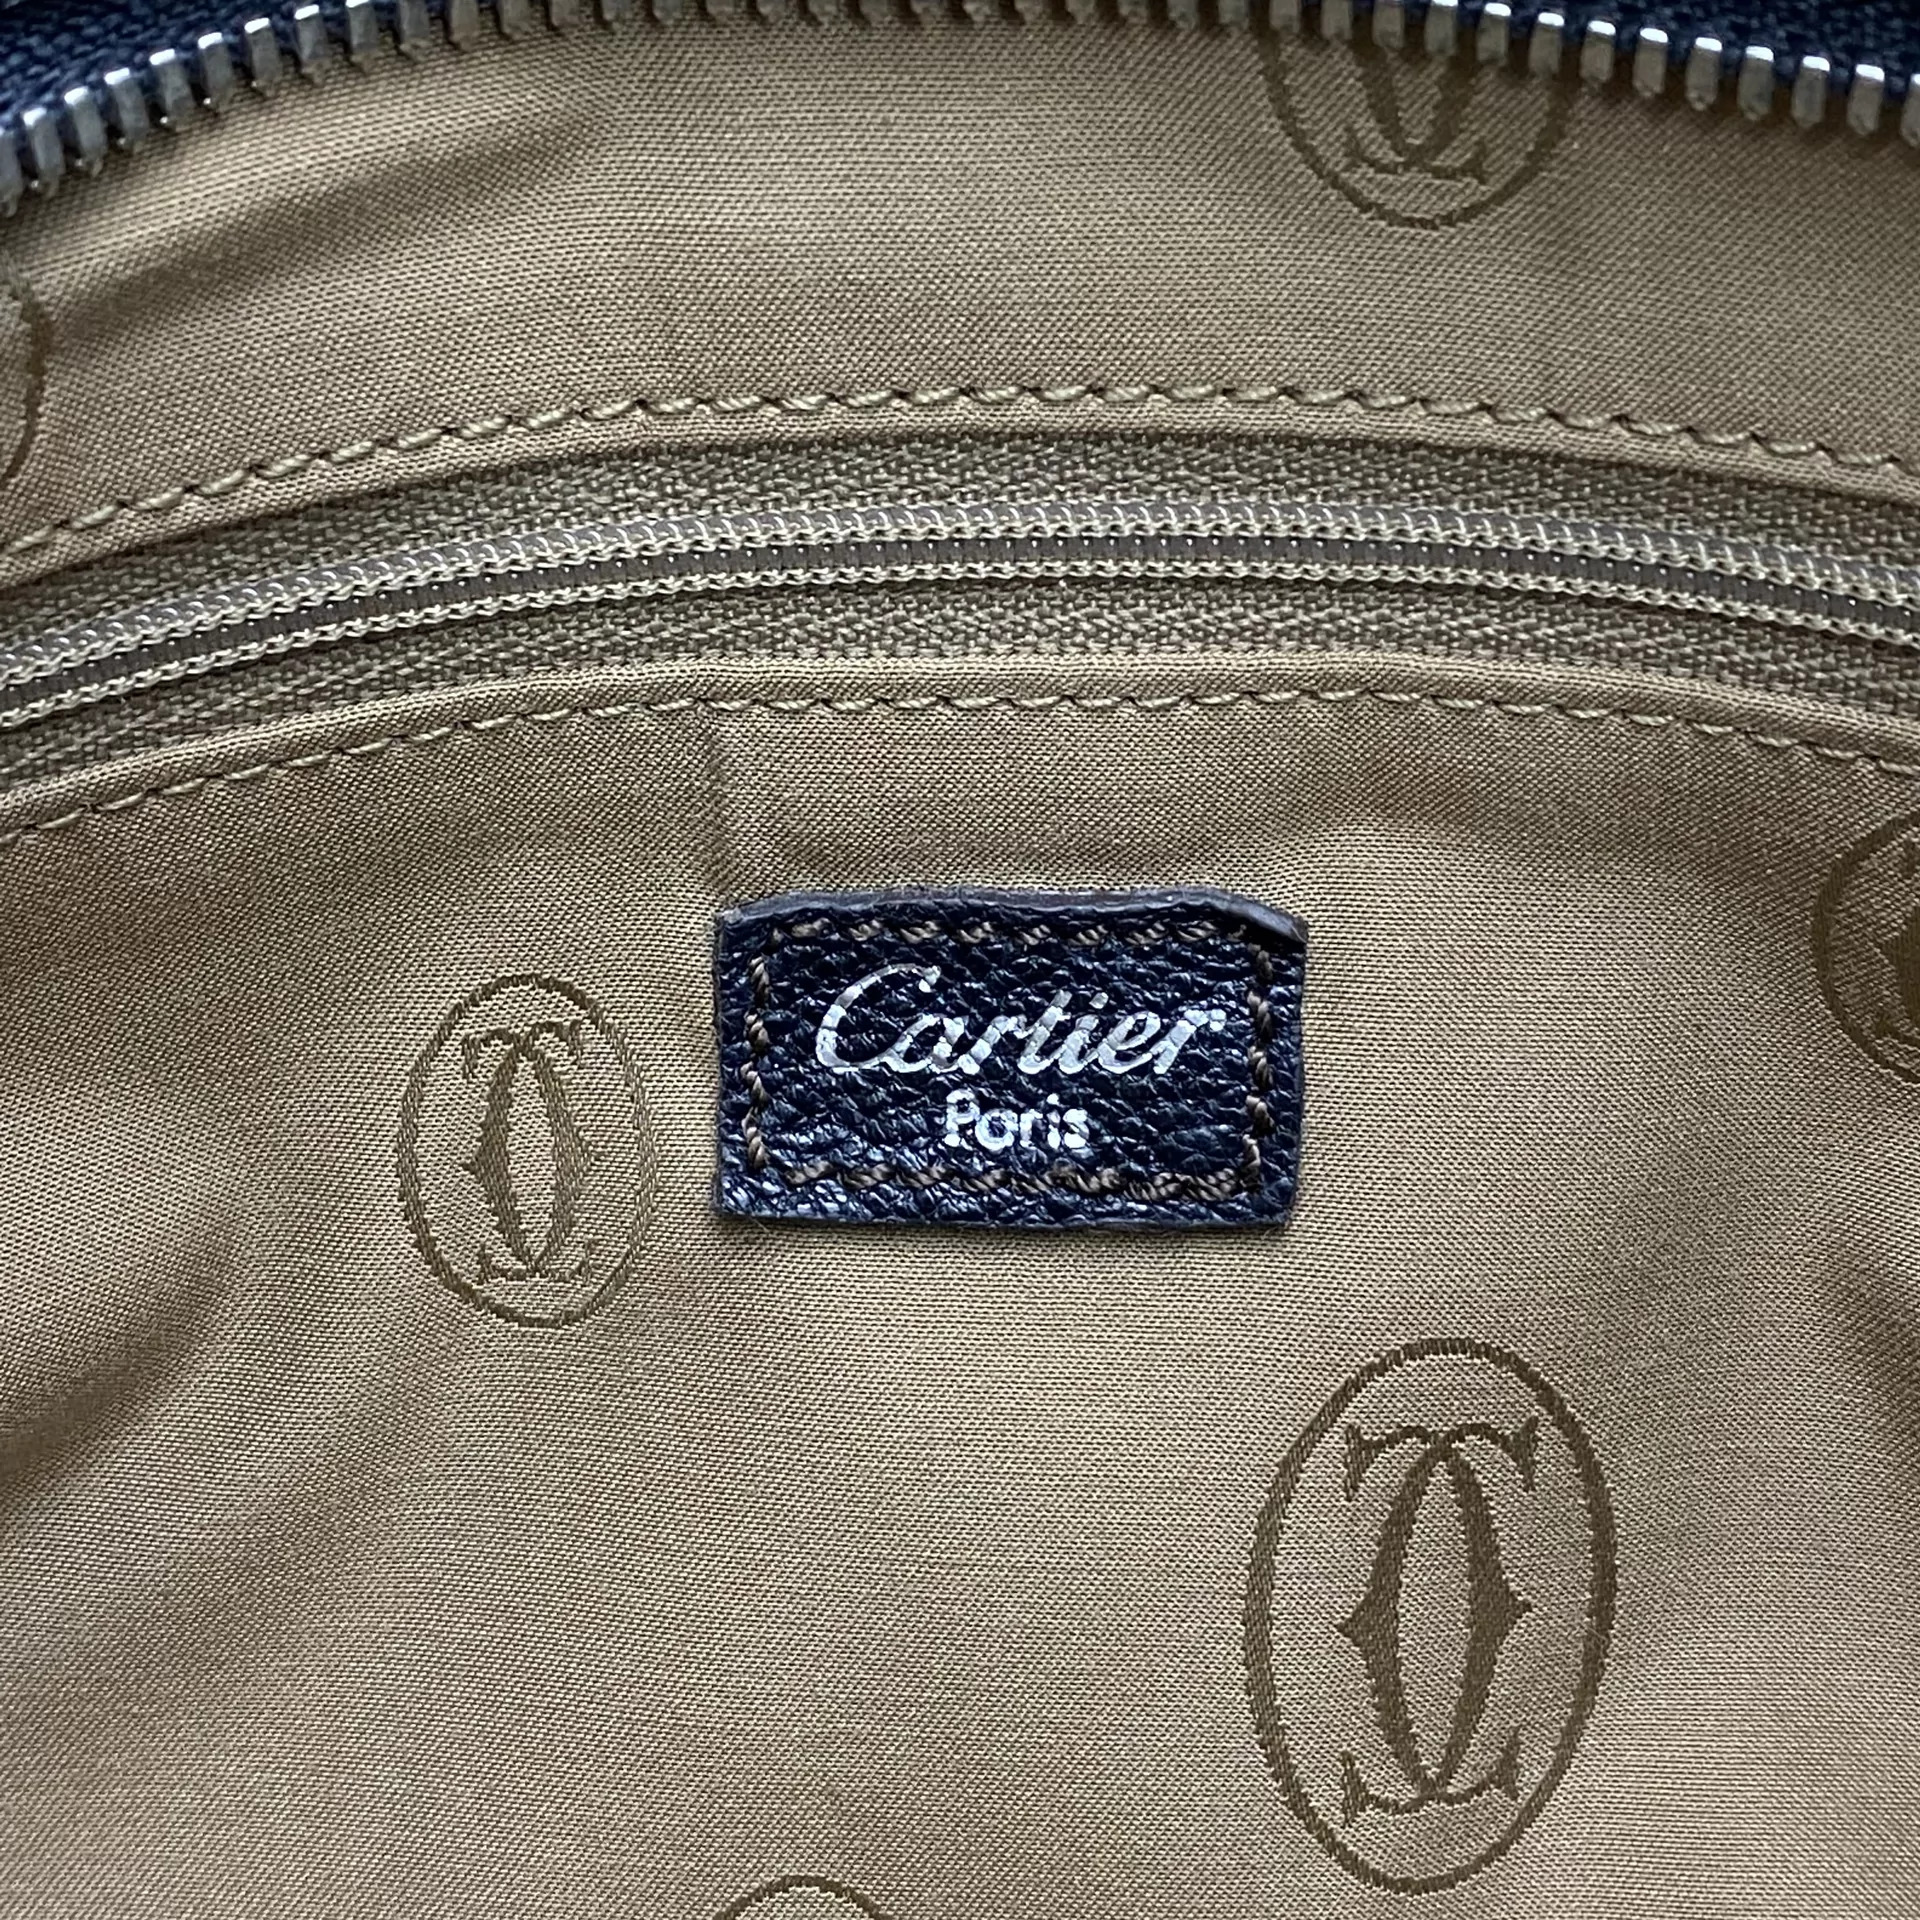 Bolsa Cartier Marcello de Cartier Preta